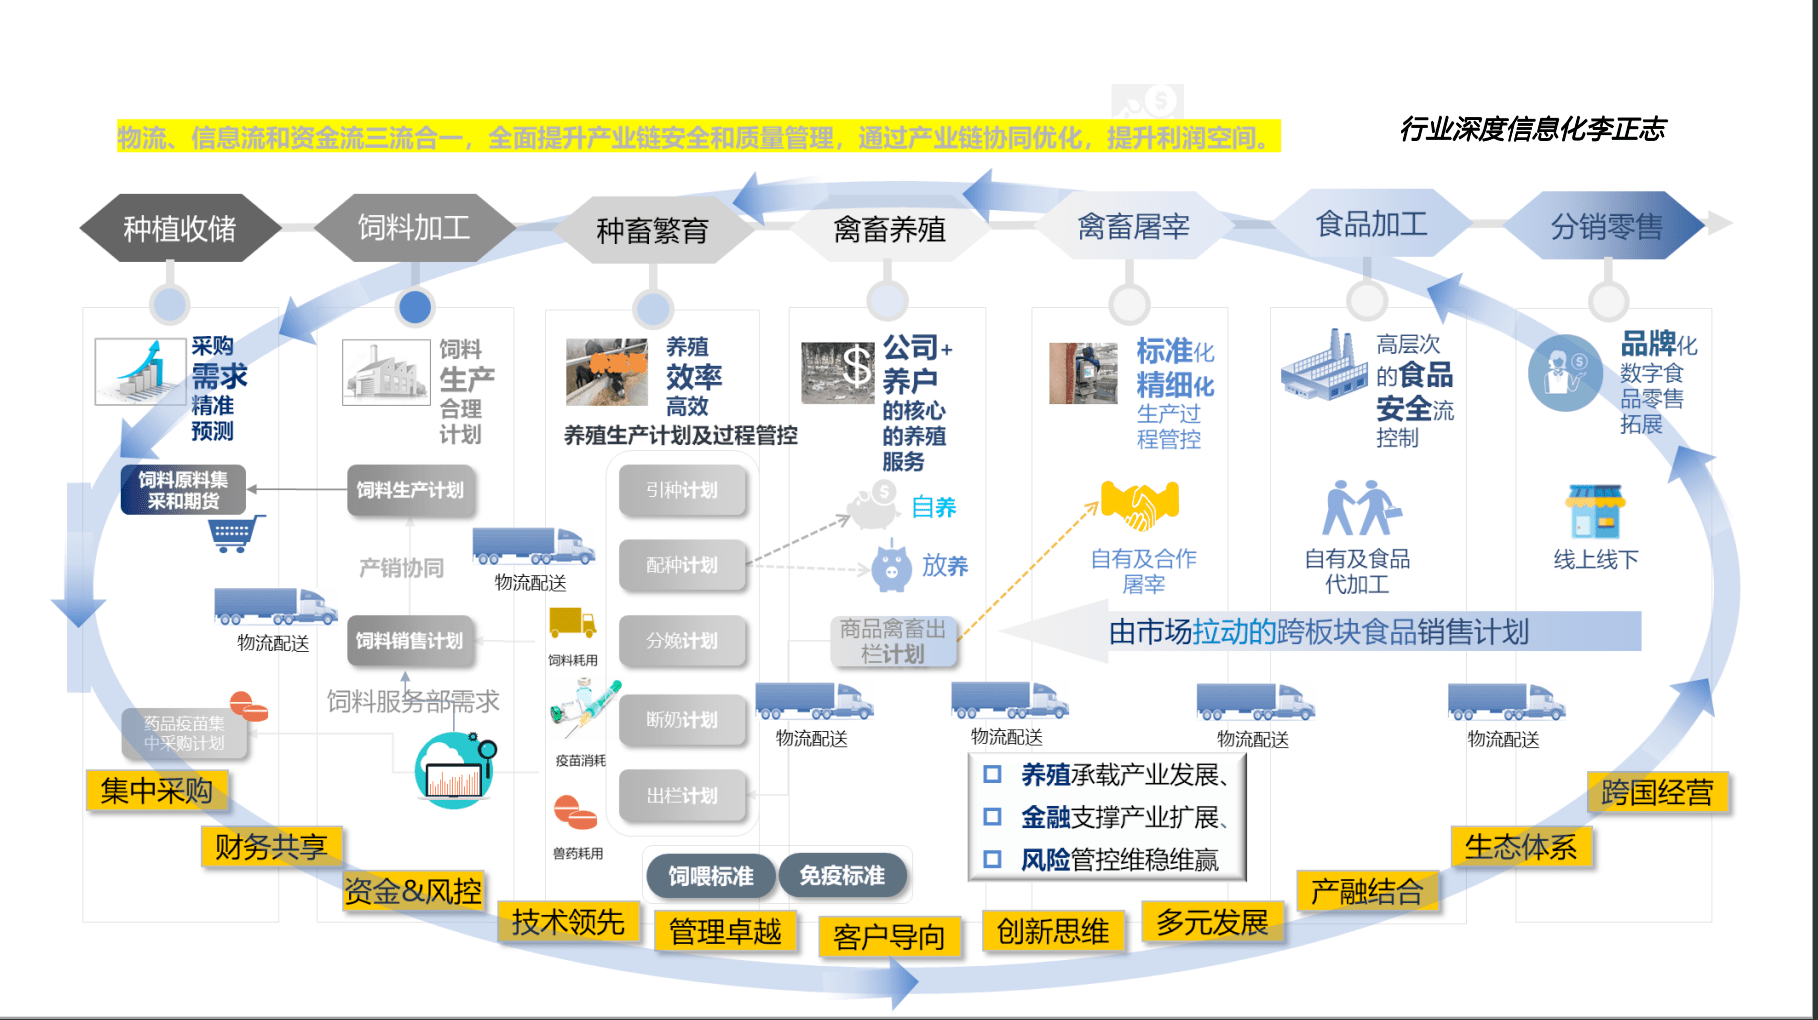 宝运莱官网华夏农牧行业讯息化结构-天主视角数字化运营